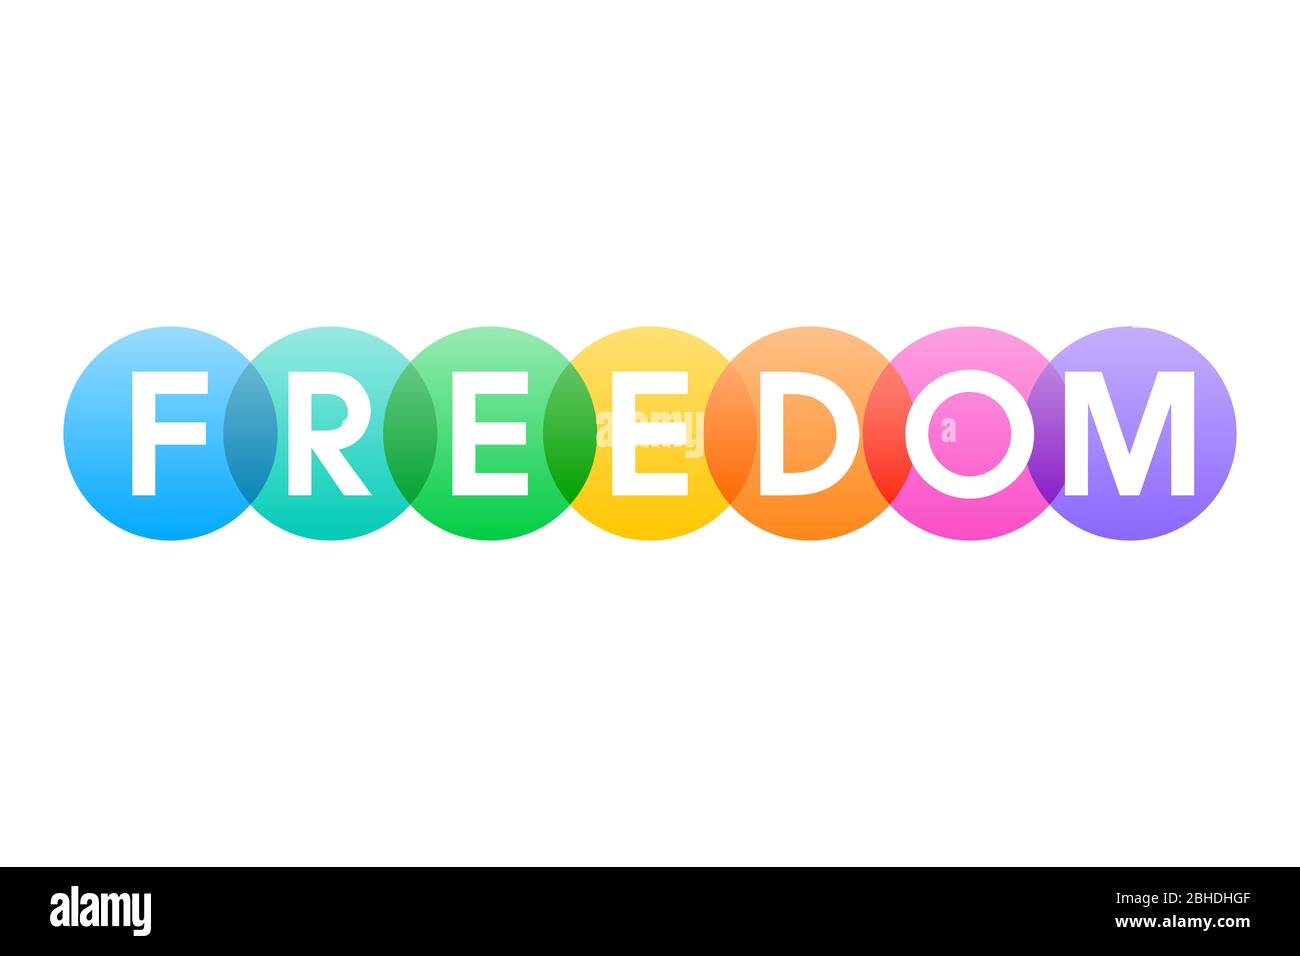 FREIHEIT, Buchstaben des Wortes in fett weißen Großbuchstaben auf überlappenden transluzenten regenbogenfarbenen Kreisen dargestellt. Isolierte Abbildung auf Weiß. Stockfoto